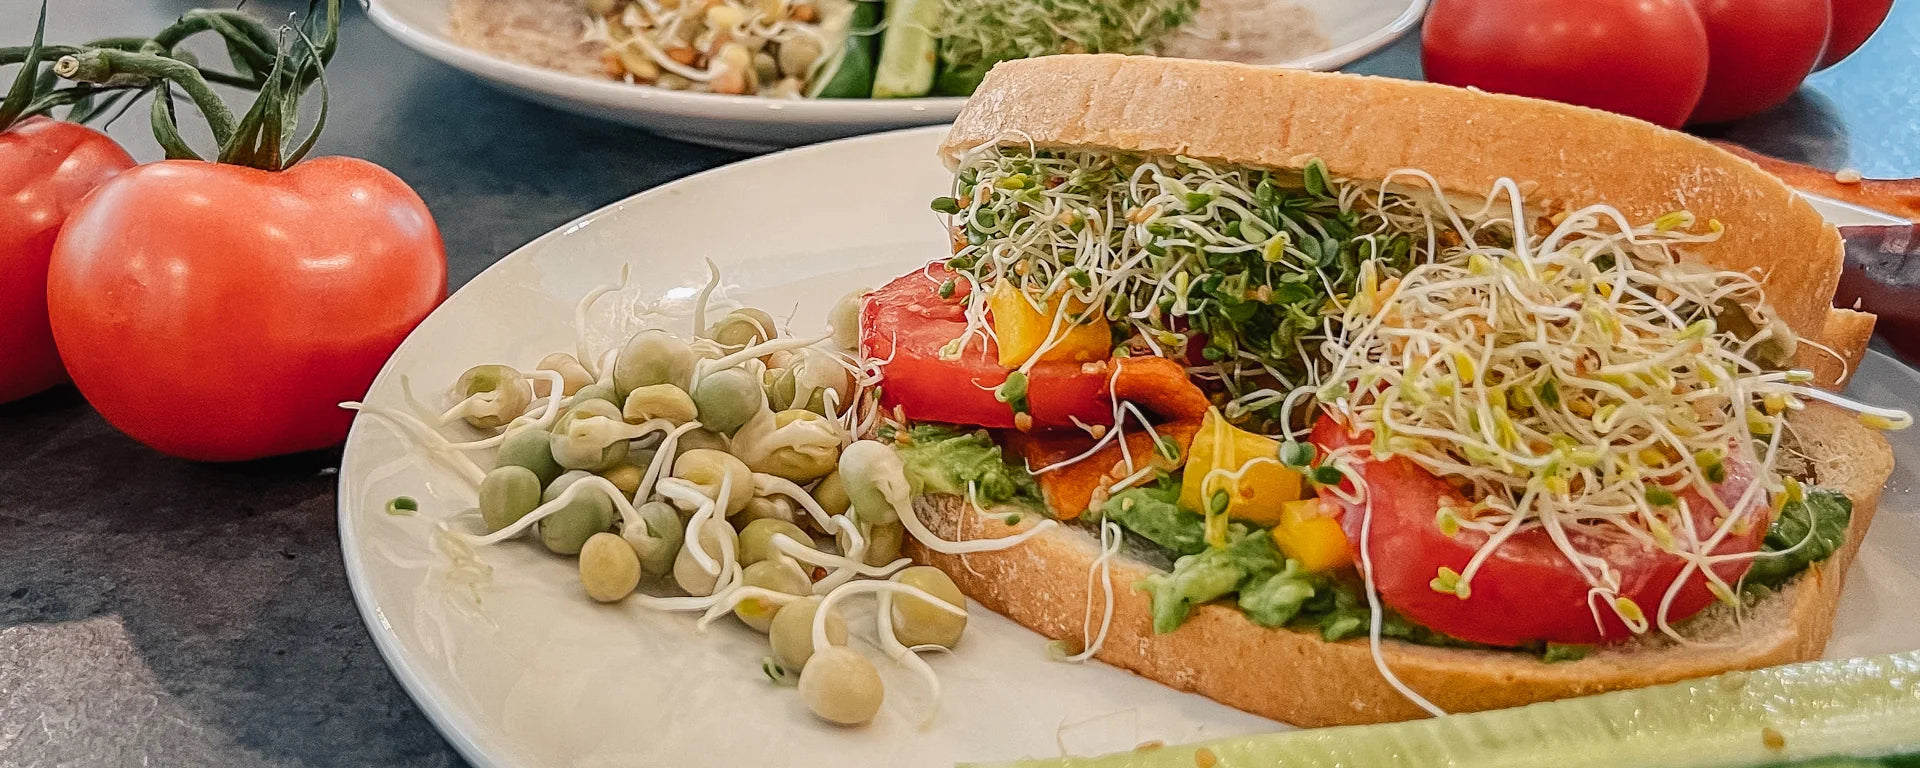 Alfalfa Broccoli Pea Sprouts in Sandwich Recipe